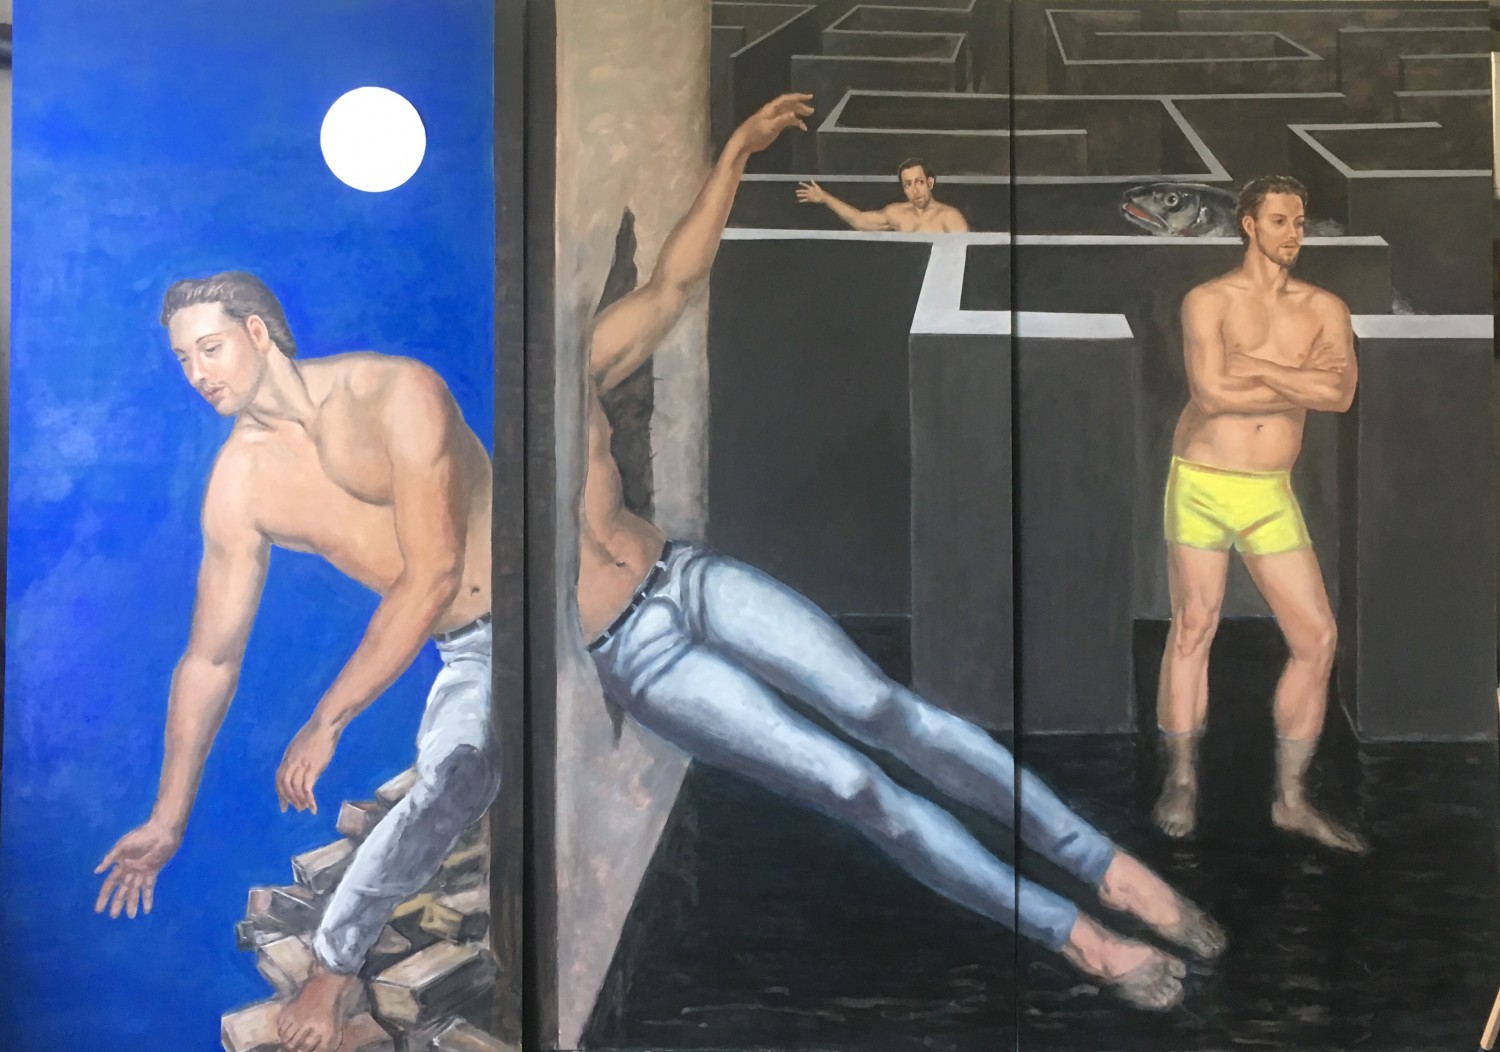 Mauerbrecher, Kunst an der Plakatwand, 2019, mixed media auf Holz, 260 x 360 cm